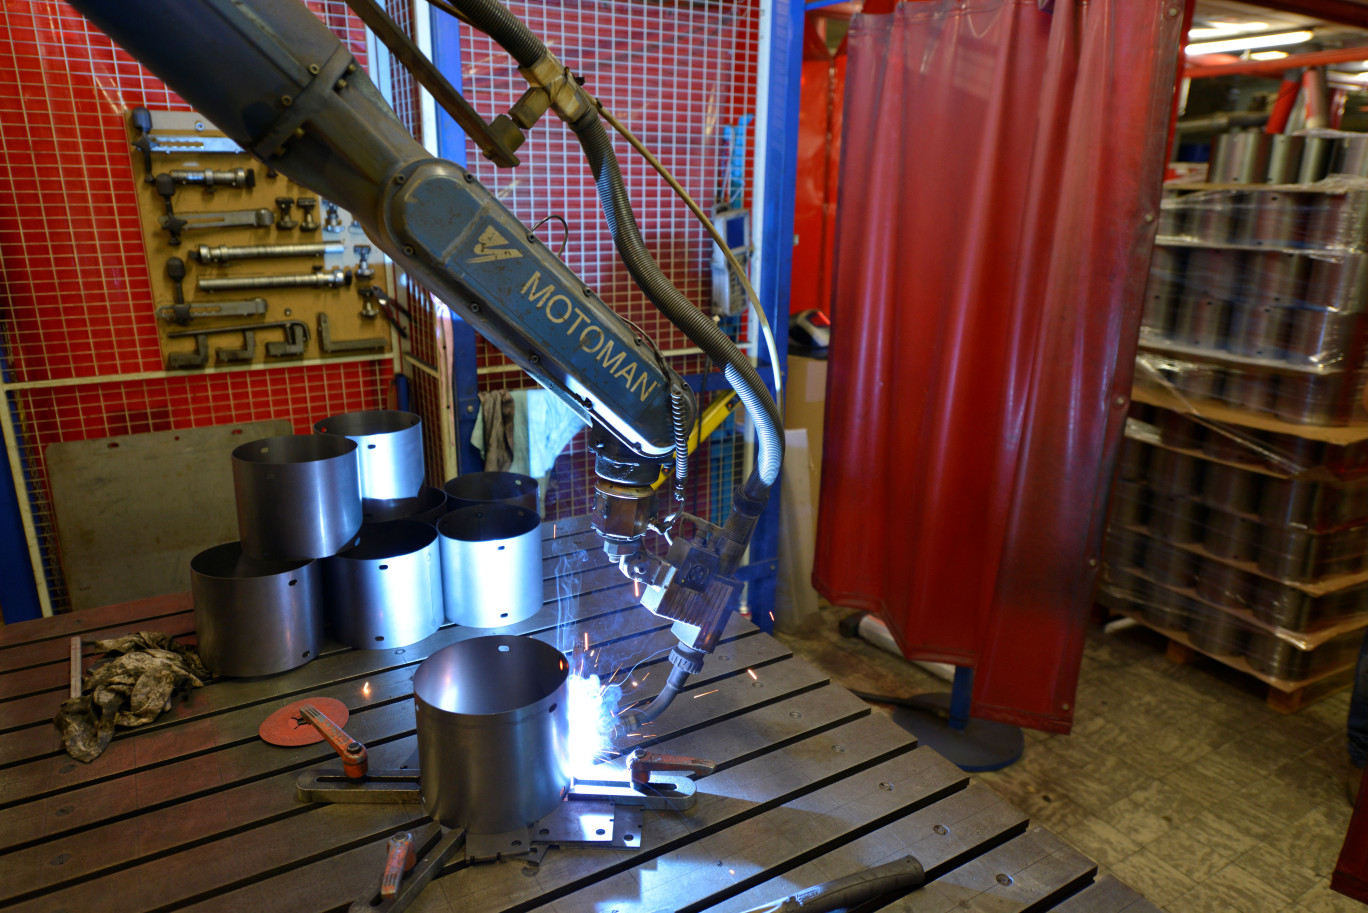 Dans les ateliers de la tôlerie Jannin-Carnet, les outils sont à l’œuvre pour transformer l’acier, l’inox, l’aluminium ou encore le cuivre et le laiton en pièces destinées à l’emmagasinement d’énergie, au transport ou encore pour concevoir des machines spéciales. (© Tôlerie Jannin-Carnet)